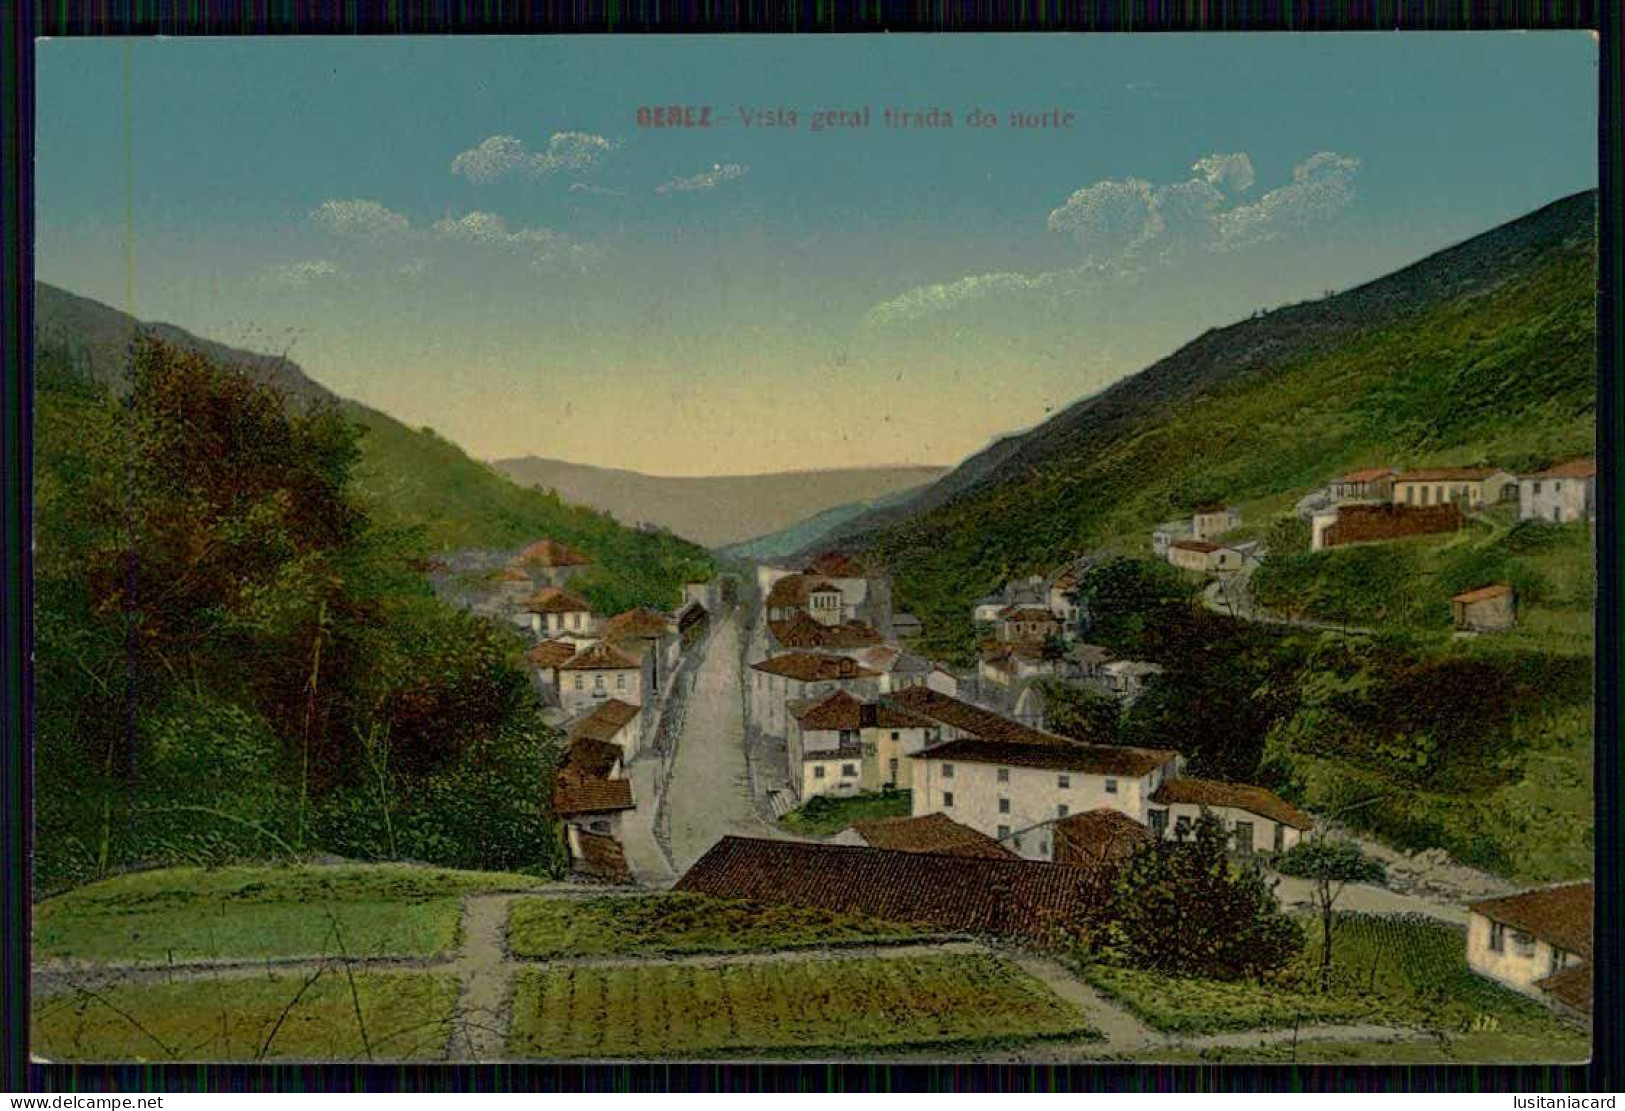 TERRAS DE BOURO - GERÊS - Vista Geral Tirada Do Norte.   Carte Postale - Braga